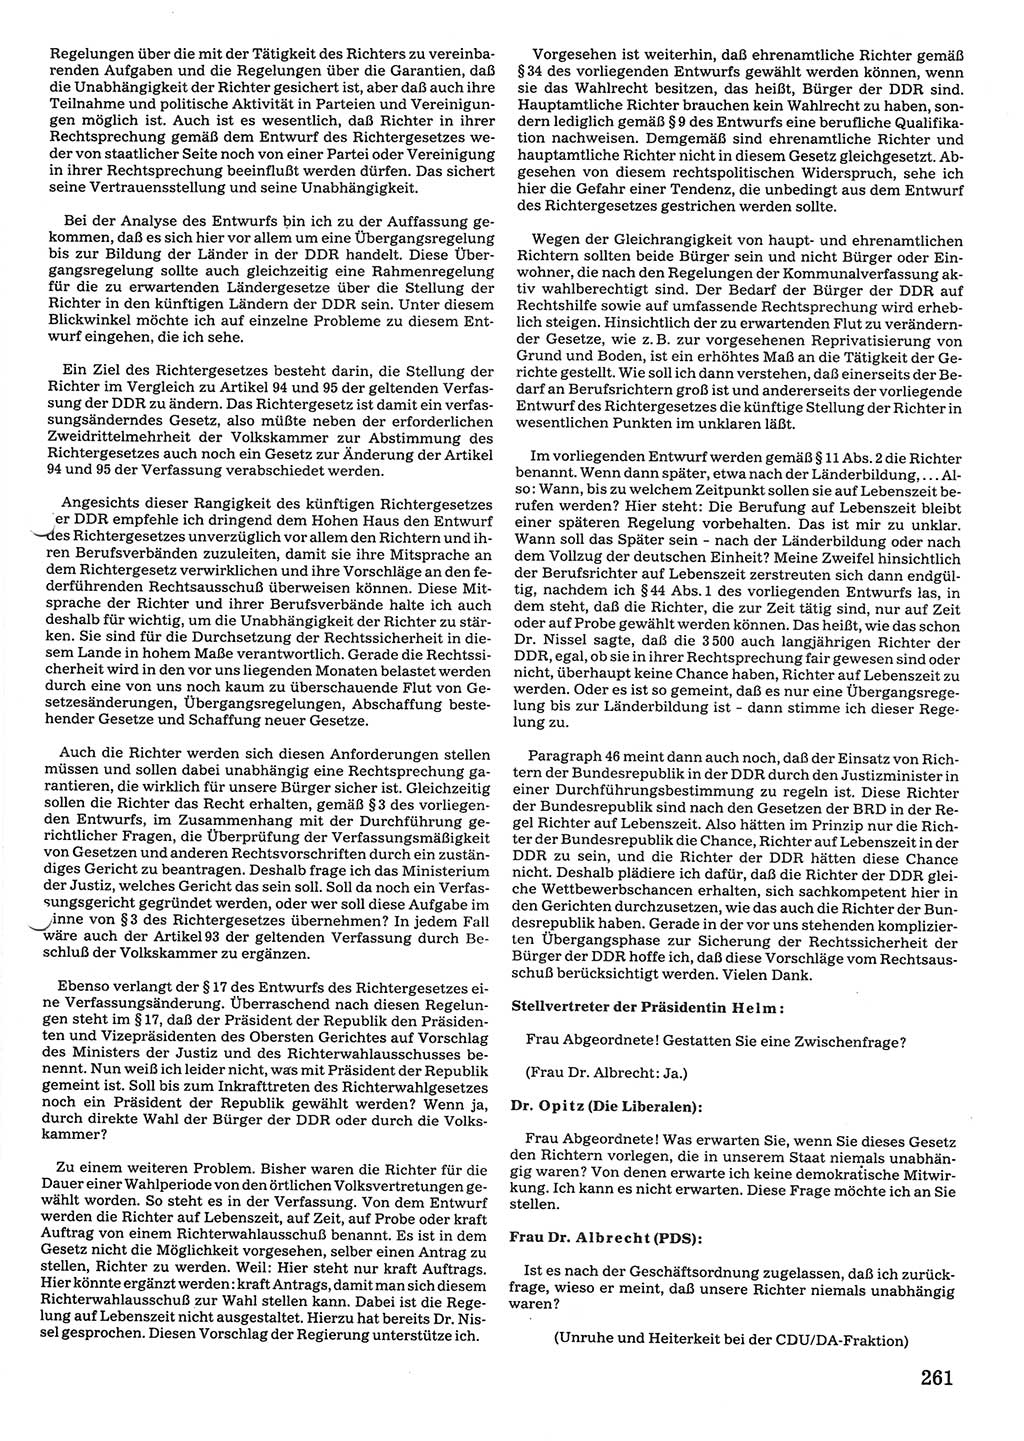 Tagungen der Volkskammer (VK) der Deutschen Demokratischen Republik (DDR), 10. Wahlperiode 1990, Seite 261 (VK. DDR 10. WP. 1990, Prot. Tg. 1-38, 5.4.-2.10.1990, S. 261)